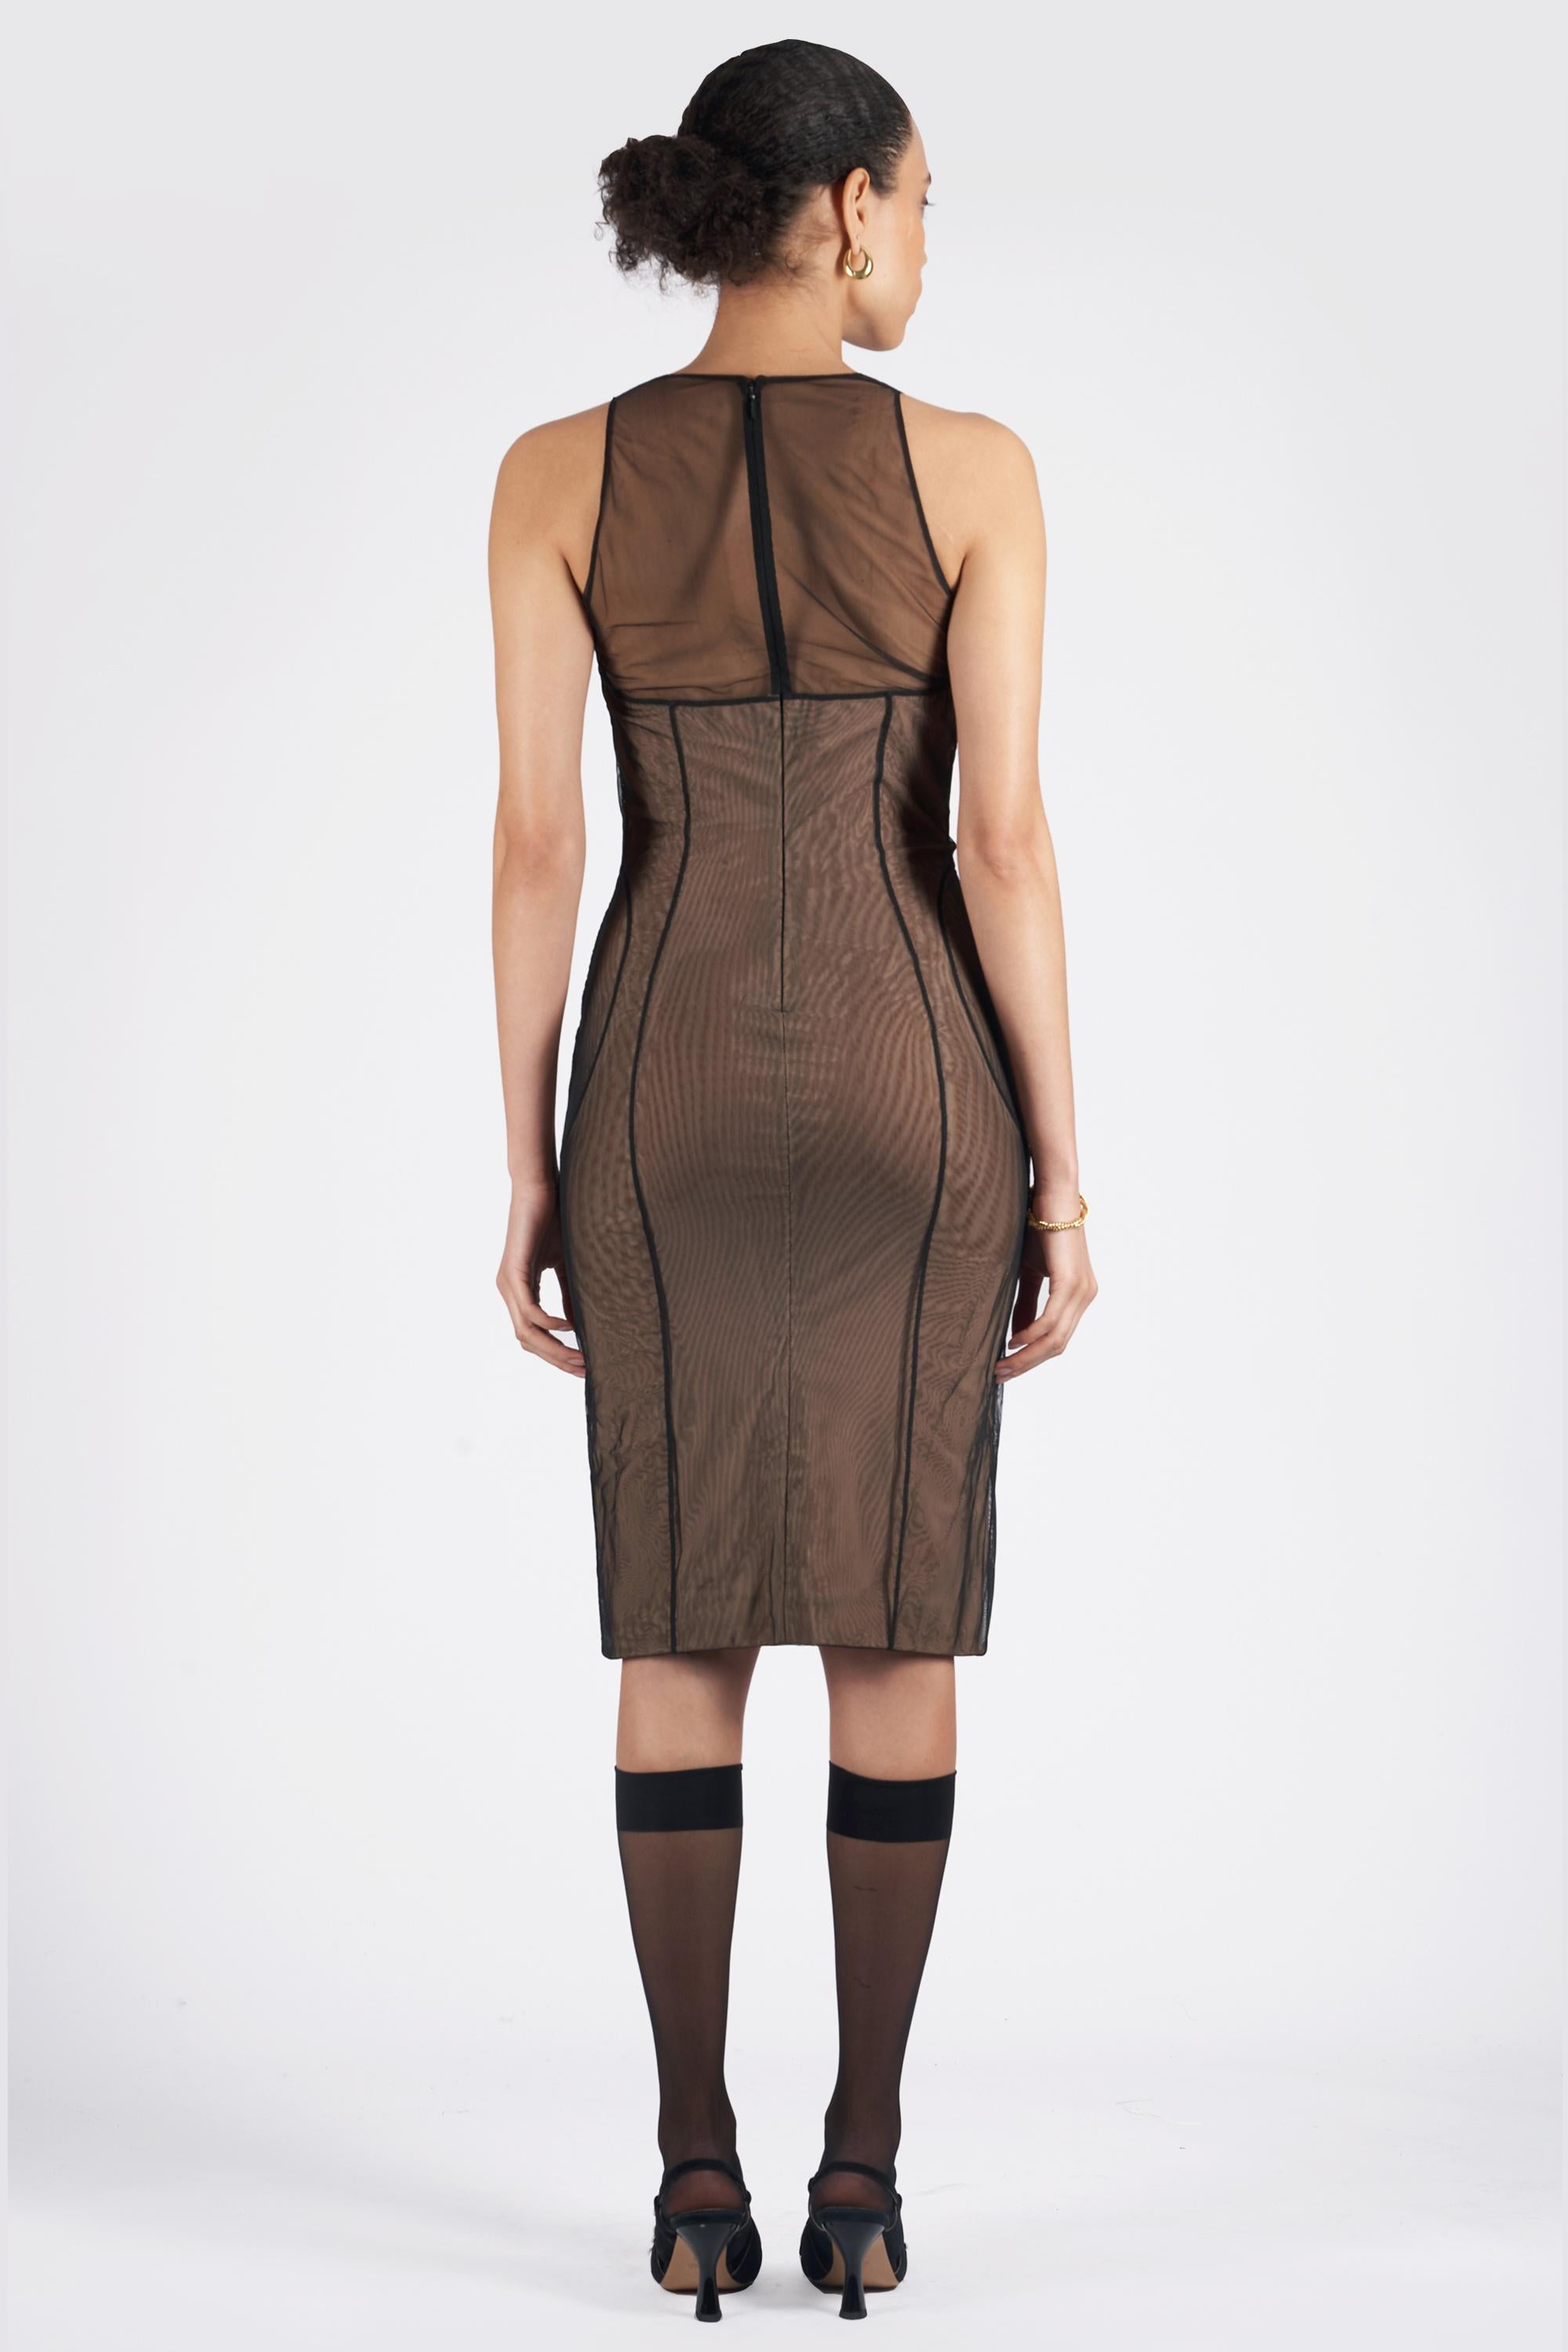 Nous avons le plaisir de vous présenter cette robe corset bodycon Gucci by Tom Ford Spring Summer 2001, d'une rareté inouïe. Ce corset bustier recouvert de tulle transparent est doté d'un col rond, d'un corsage structuré et d'une fermeture à